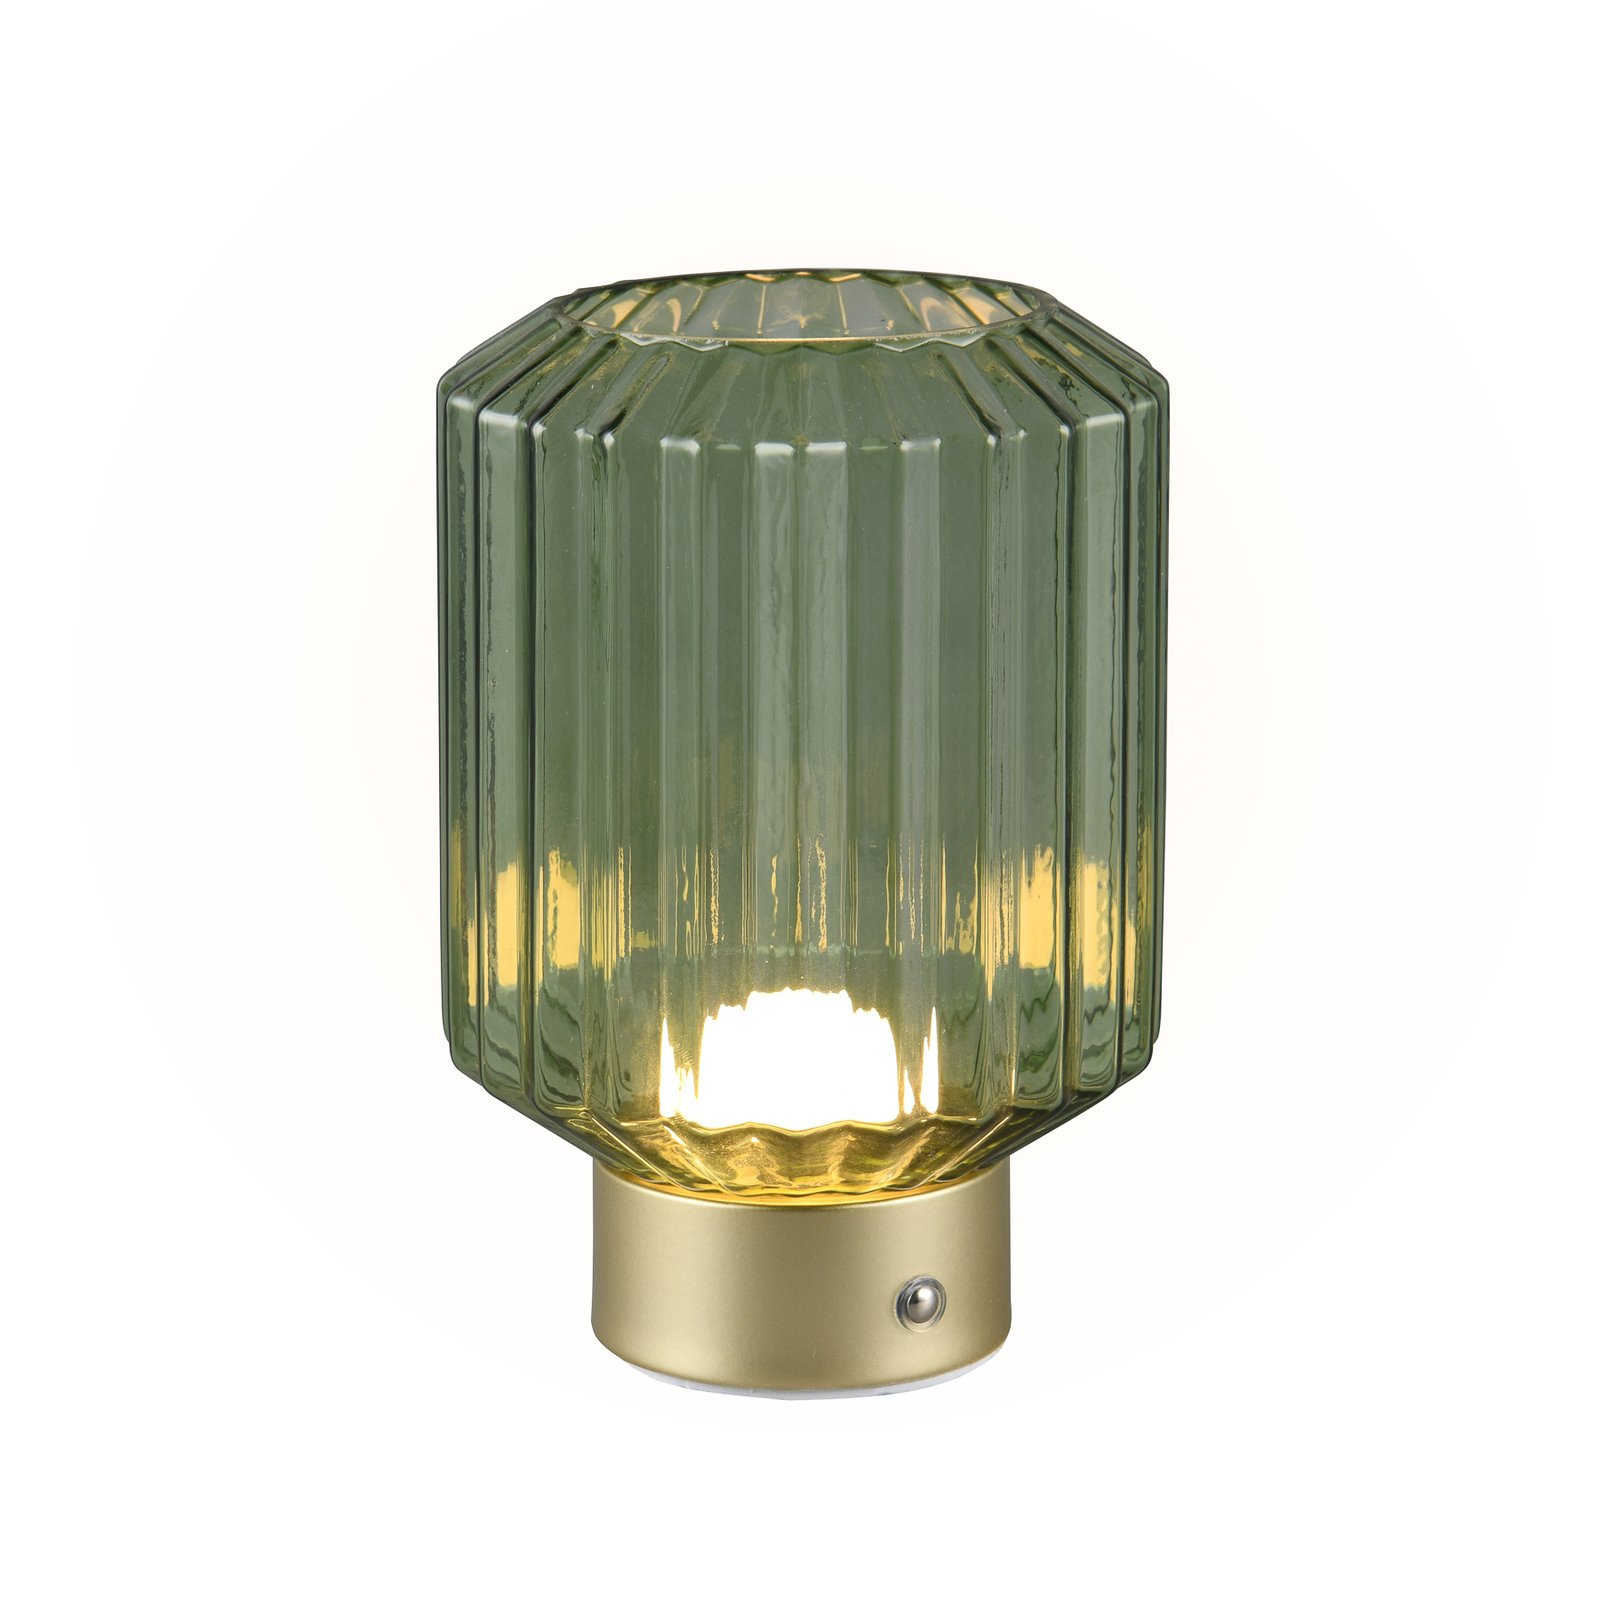 Lord LED įkraunama stalinė lempa, žalvario/žalios spalvos, aukštis 19,5